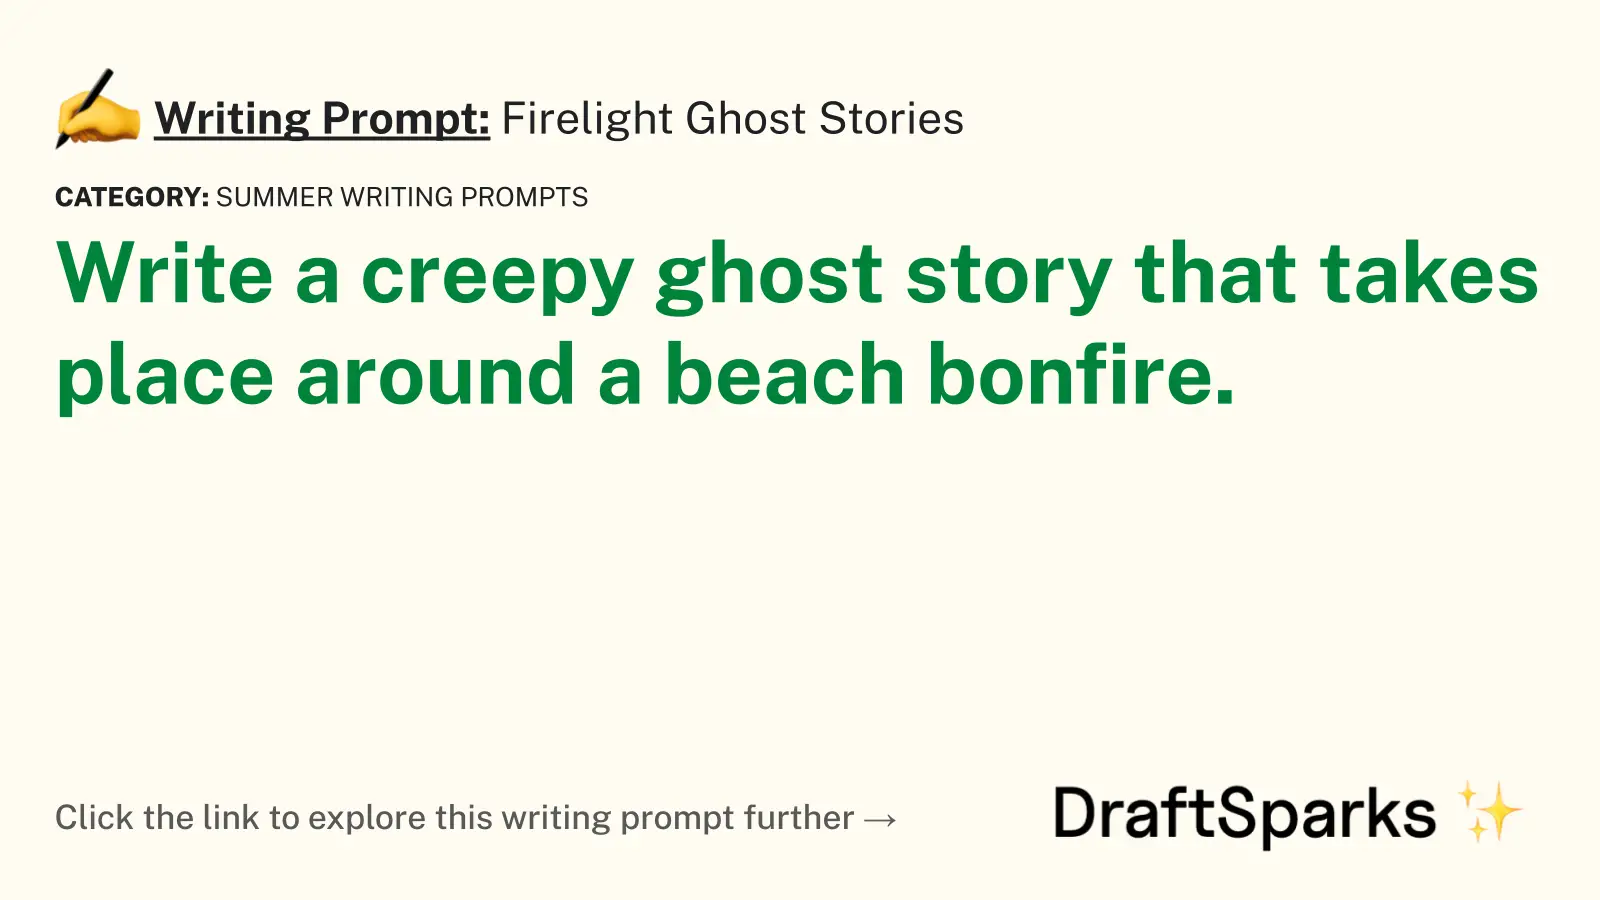 Firelight Ghost Stories